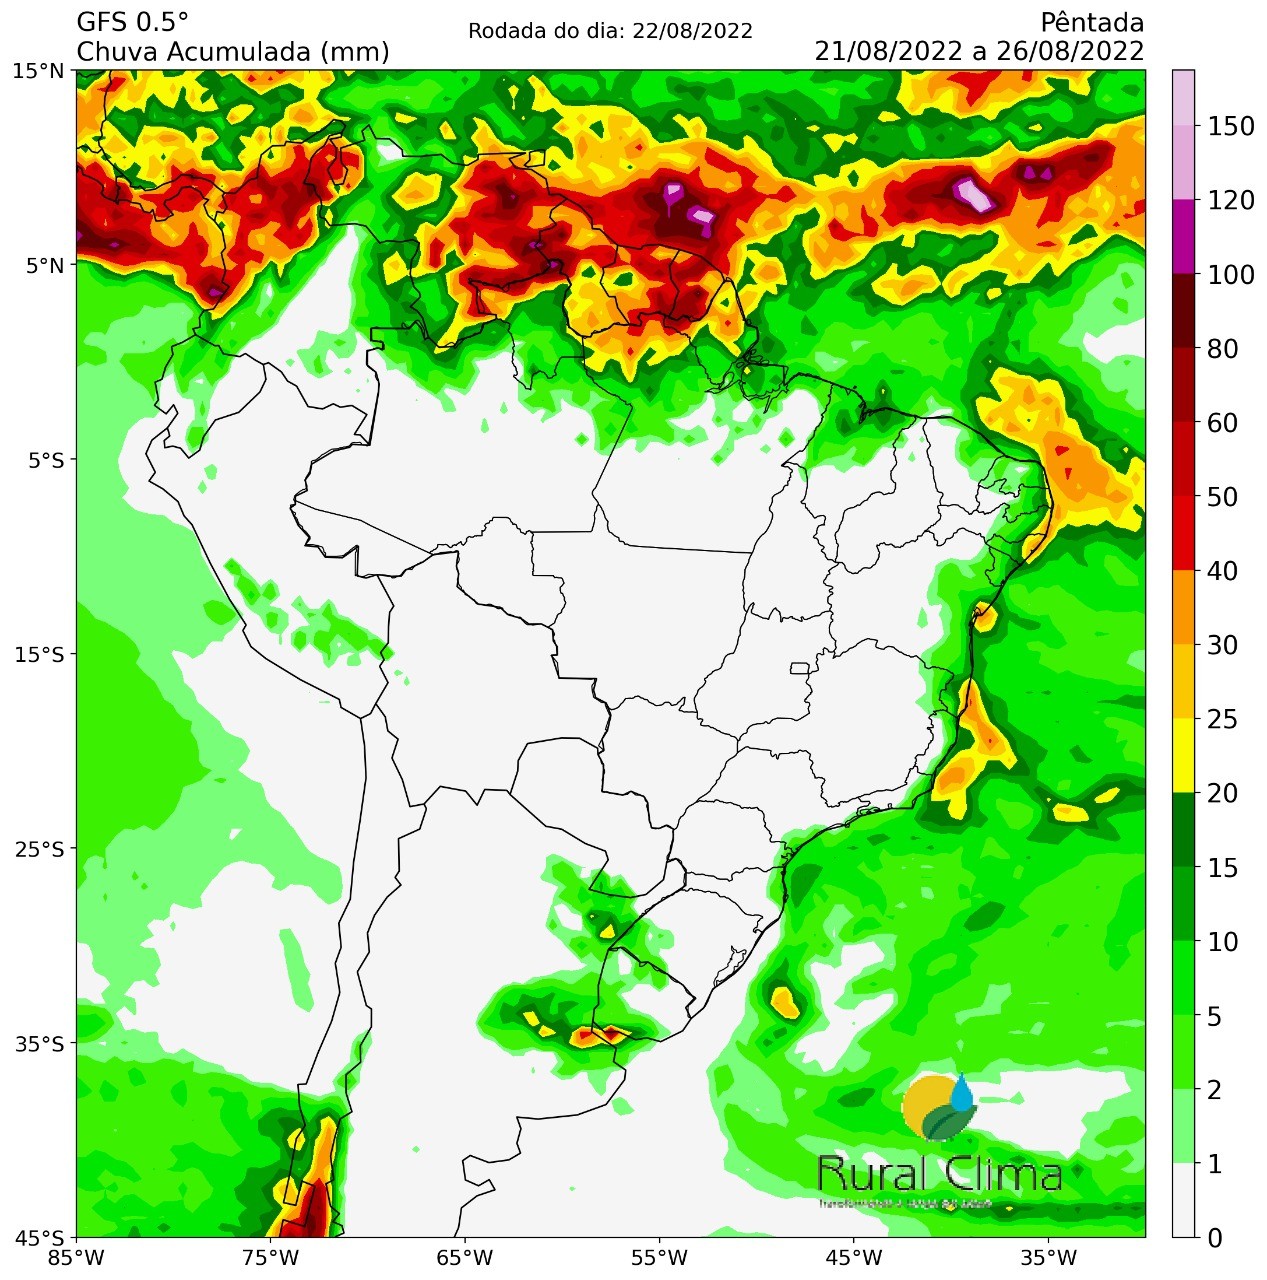 Apenas três pontos devem ter chuva na semana: Rio Grande do Sul, leste do Nordeste e extremo norte  (Foto: Rural Clima)